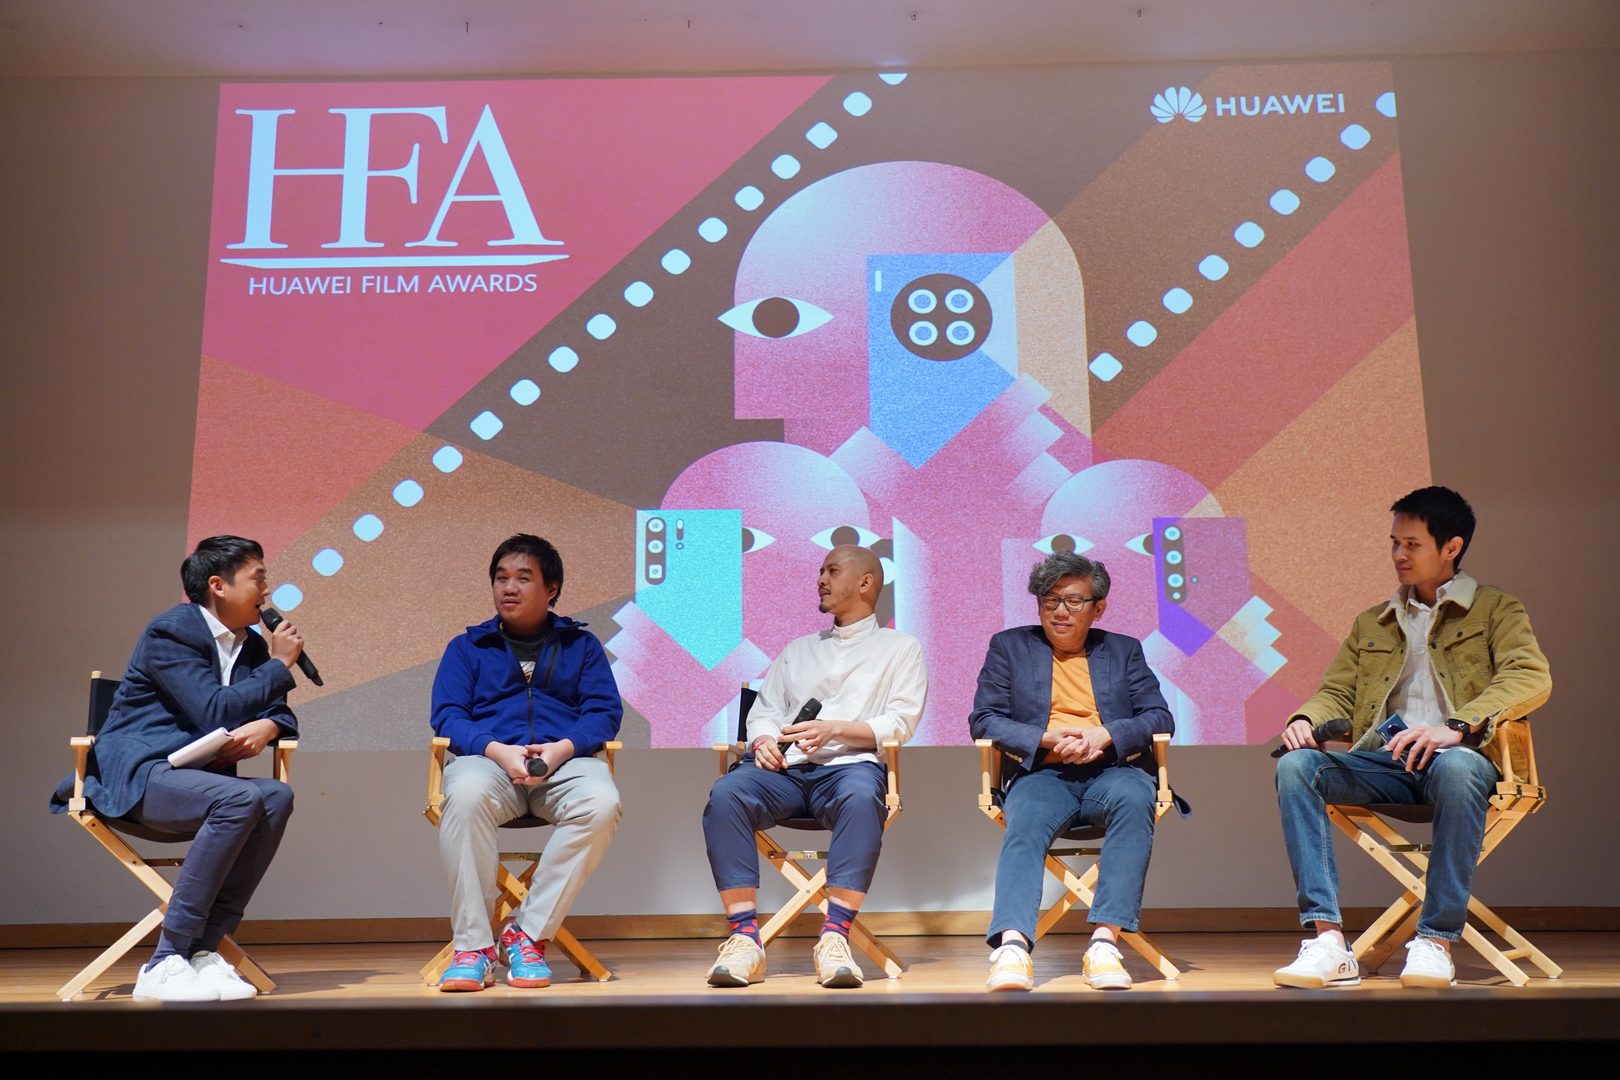 “HUAWEI Film Awards 2019” แคมเปญประกวดภาพยนตร์สั้นจากสมาร์ตโฟนระดับภูมิภาค ที่คอนเทนต์ครีเอเตอร์ไม่ควรพลาด!